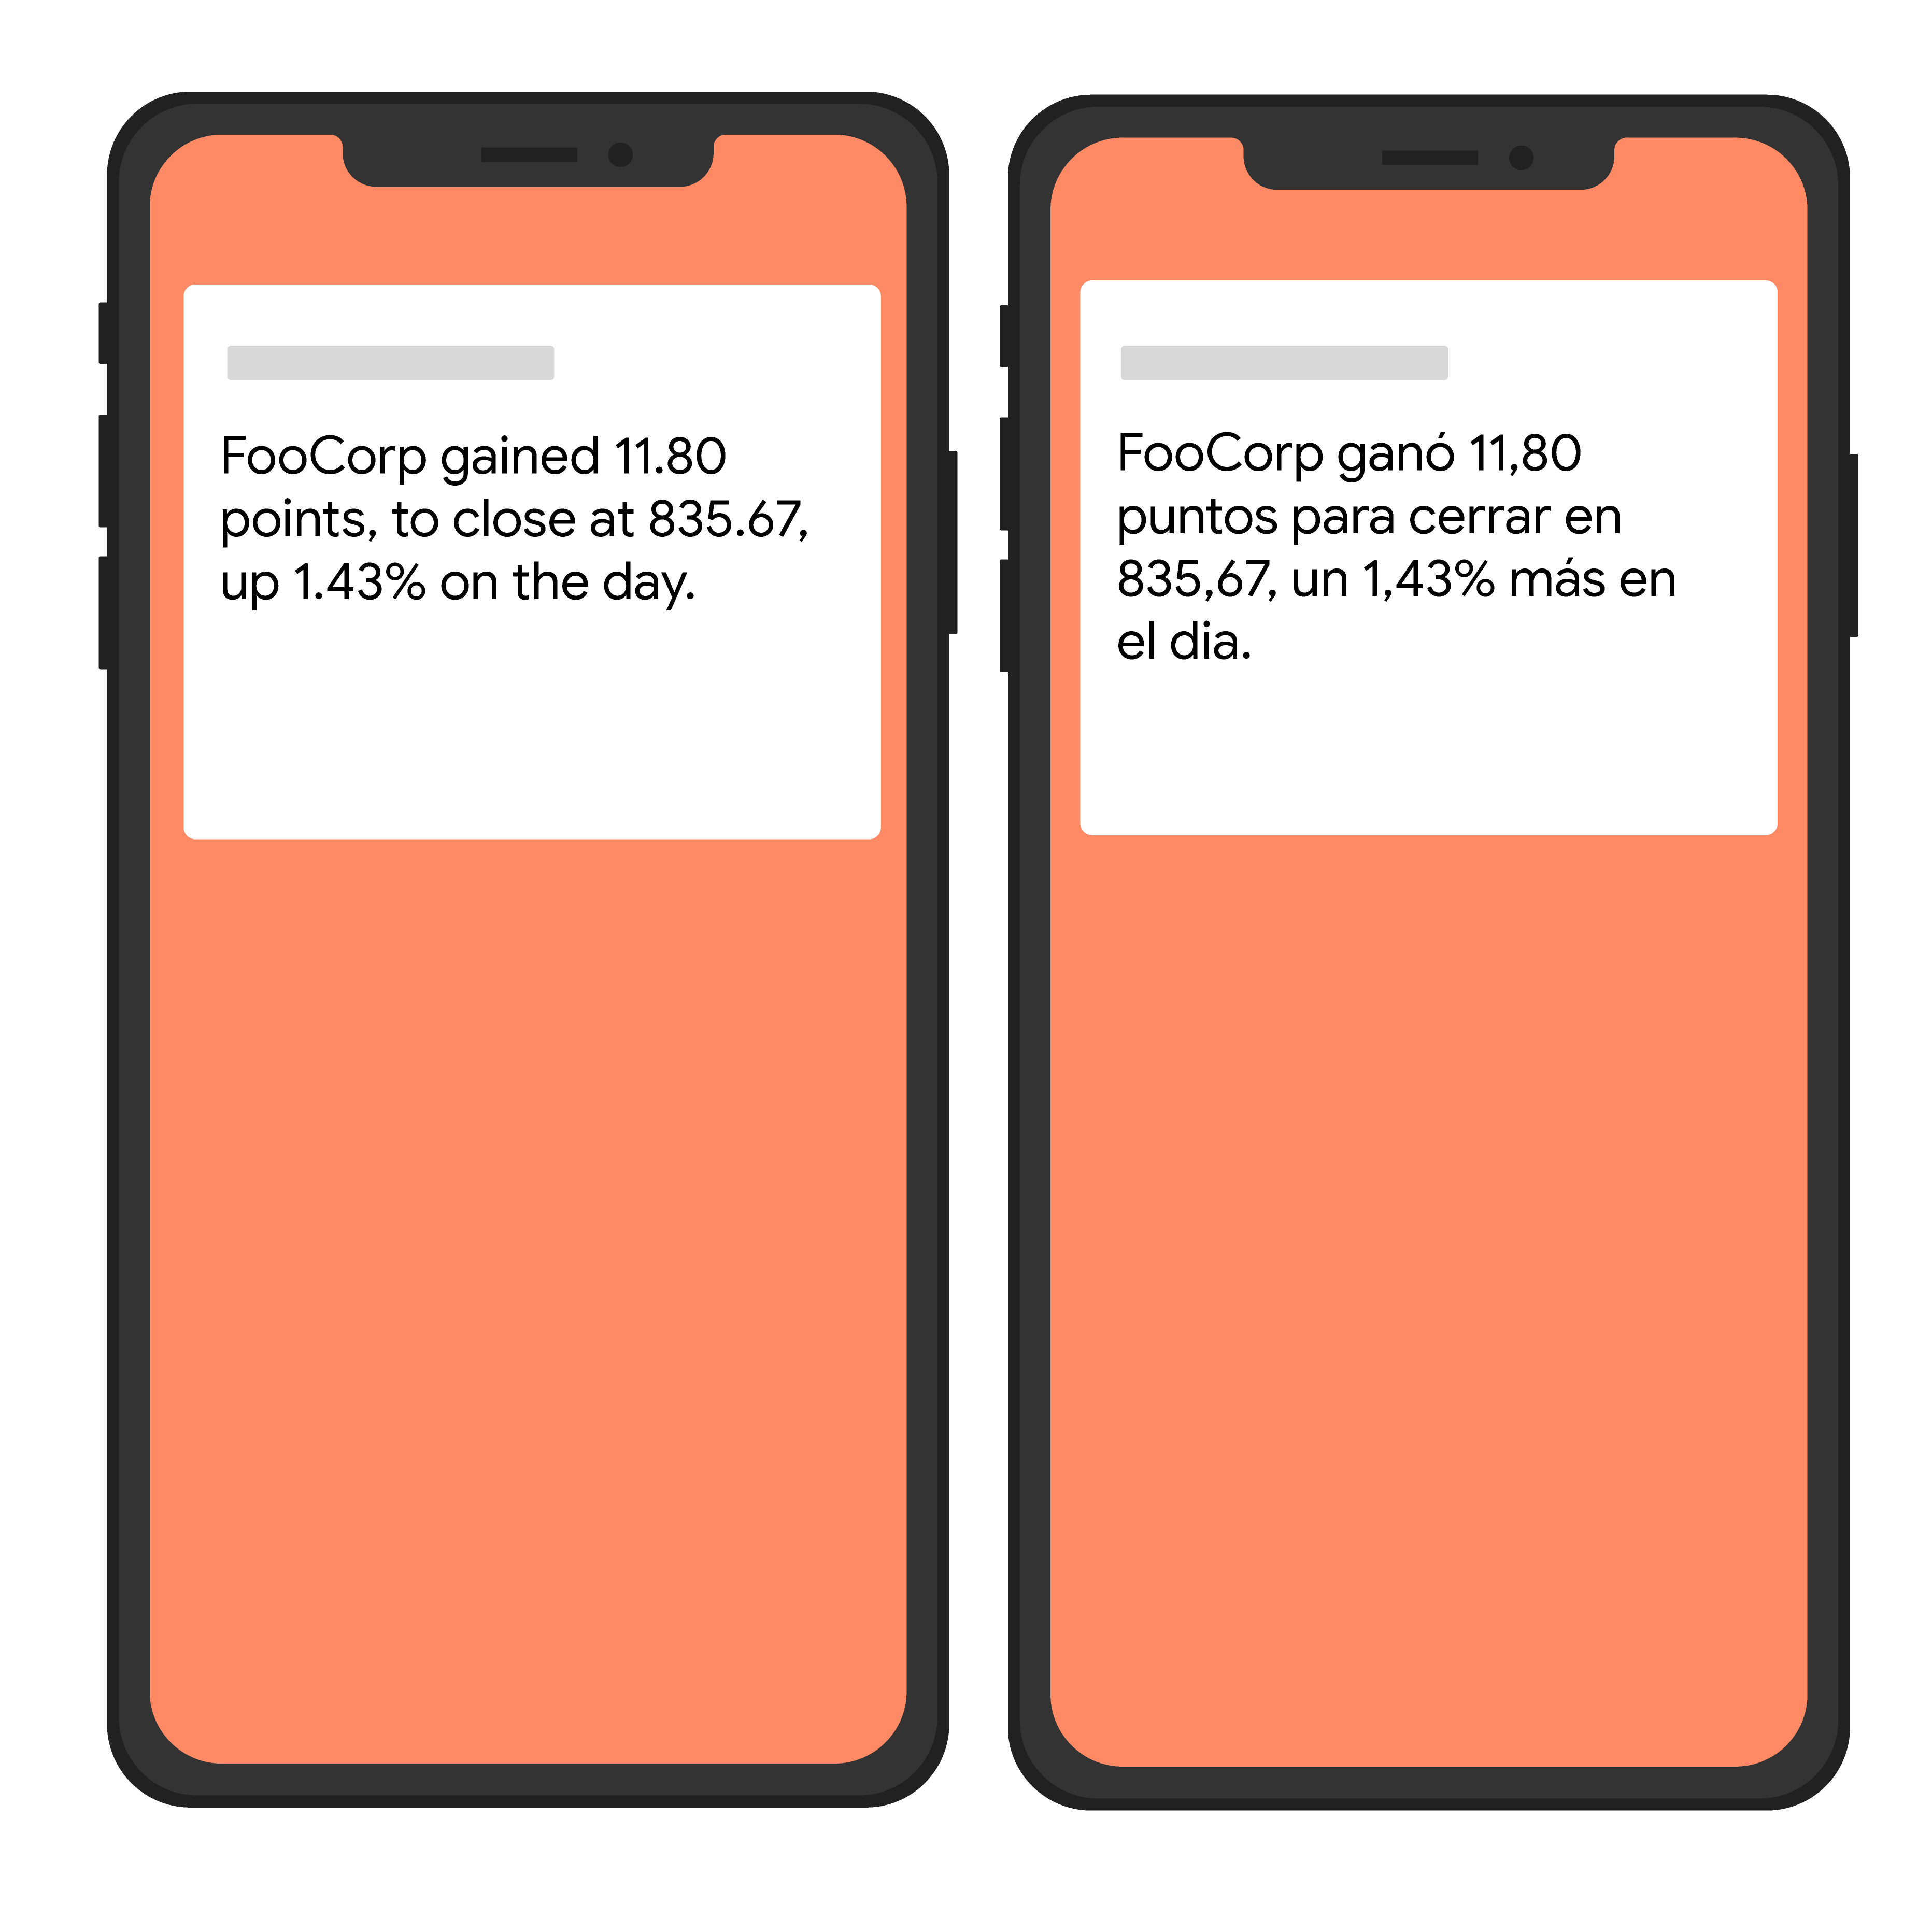 Gambar sederhana dari dua perangkat yang menampilkan teks dalam bahasa Inggris dan Spanyol